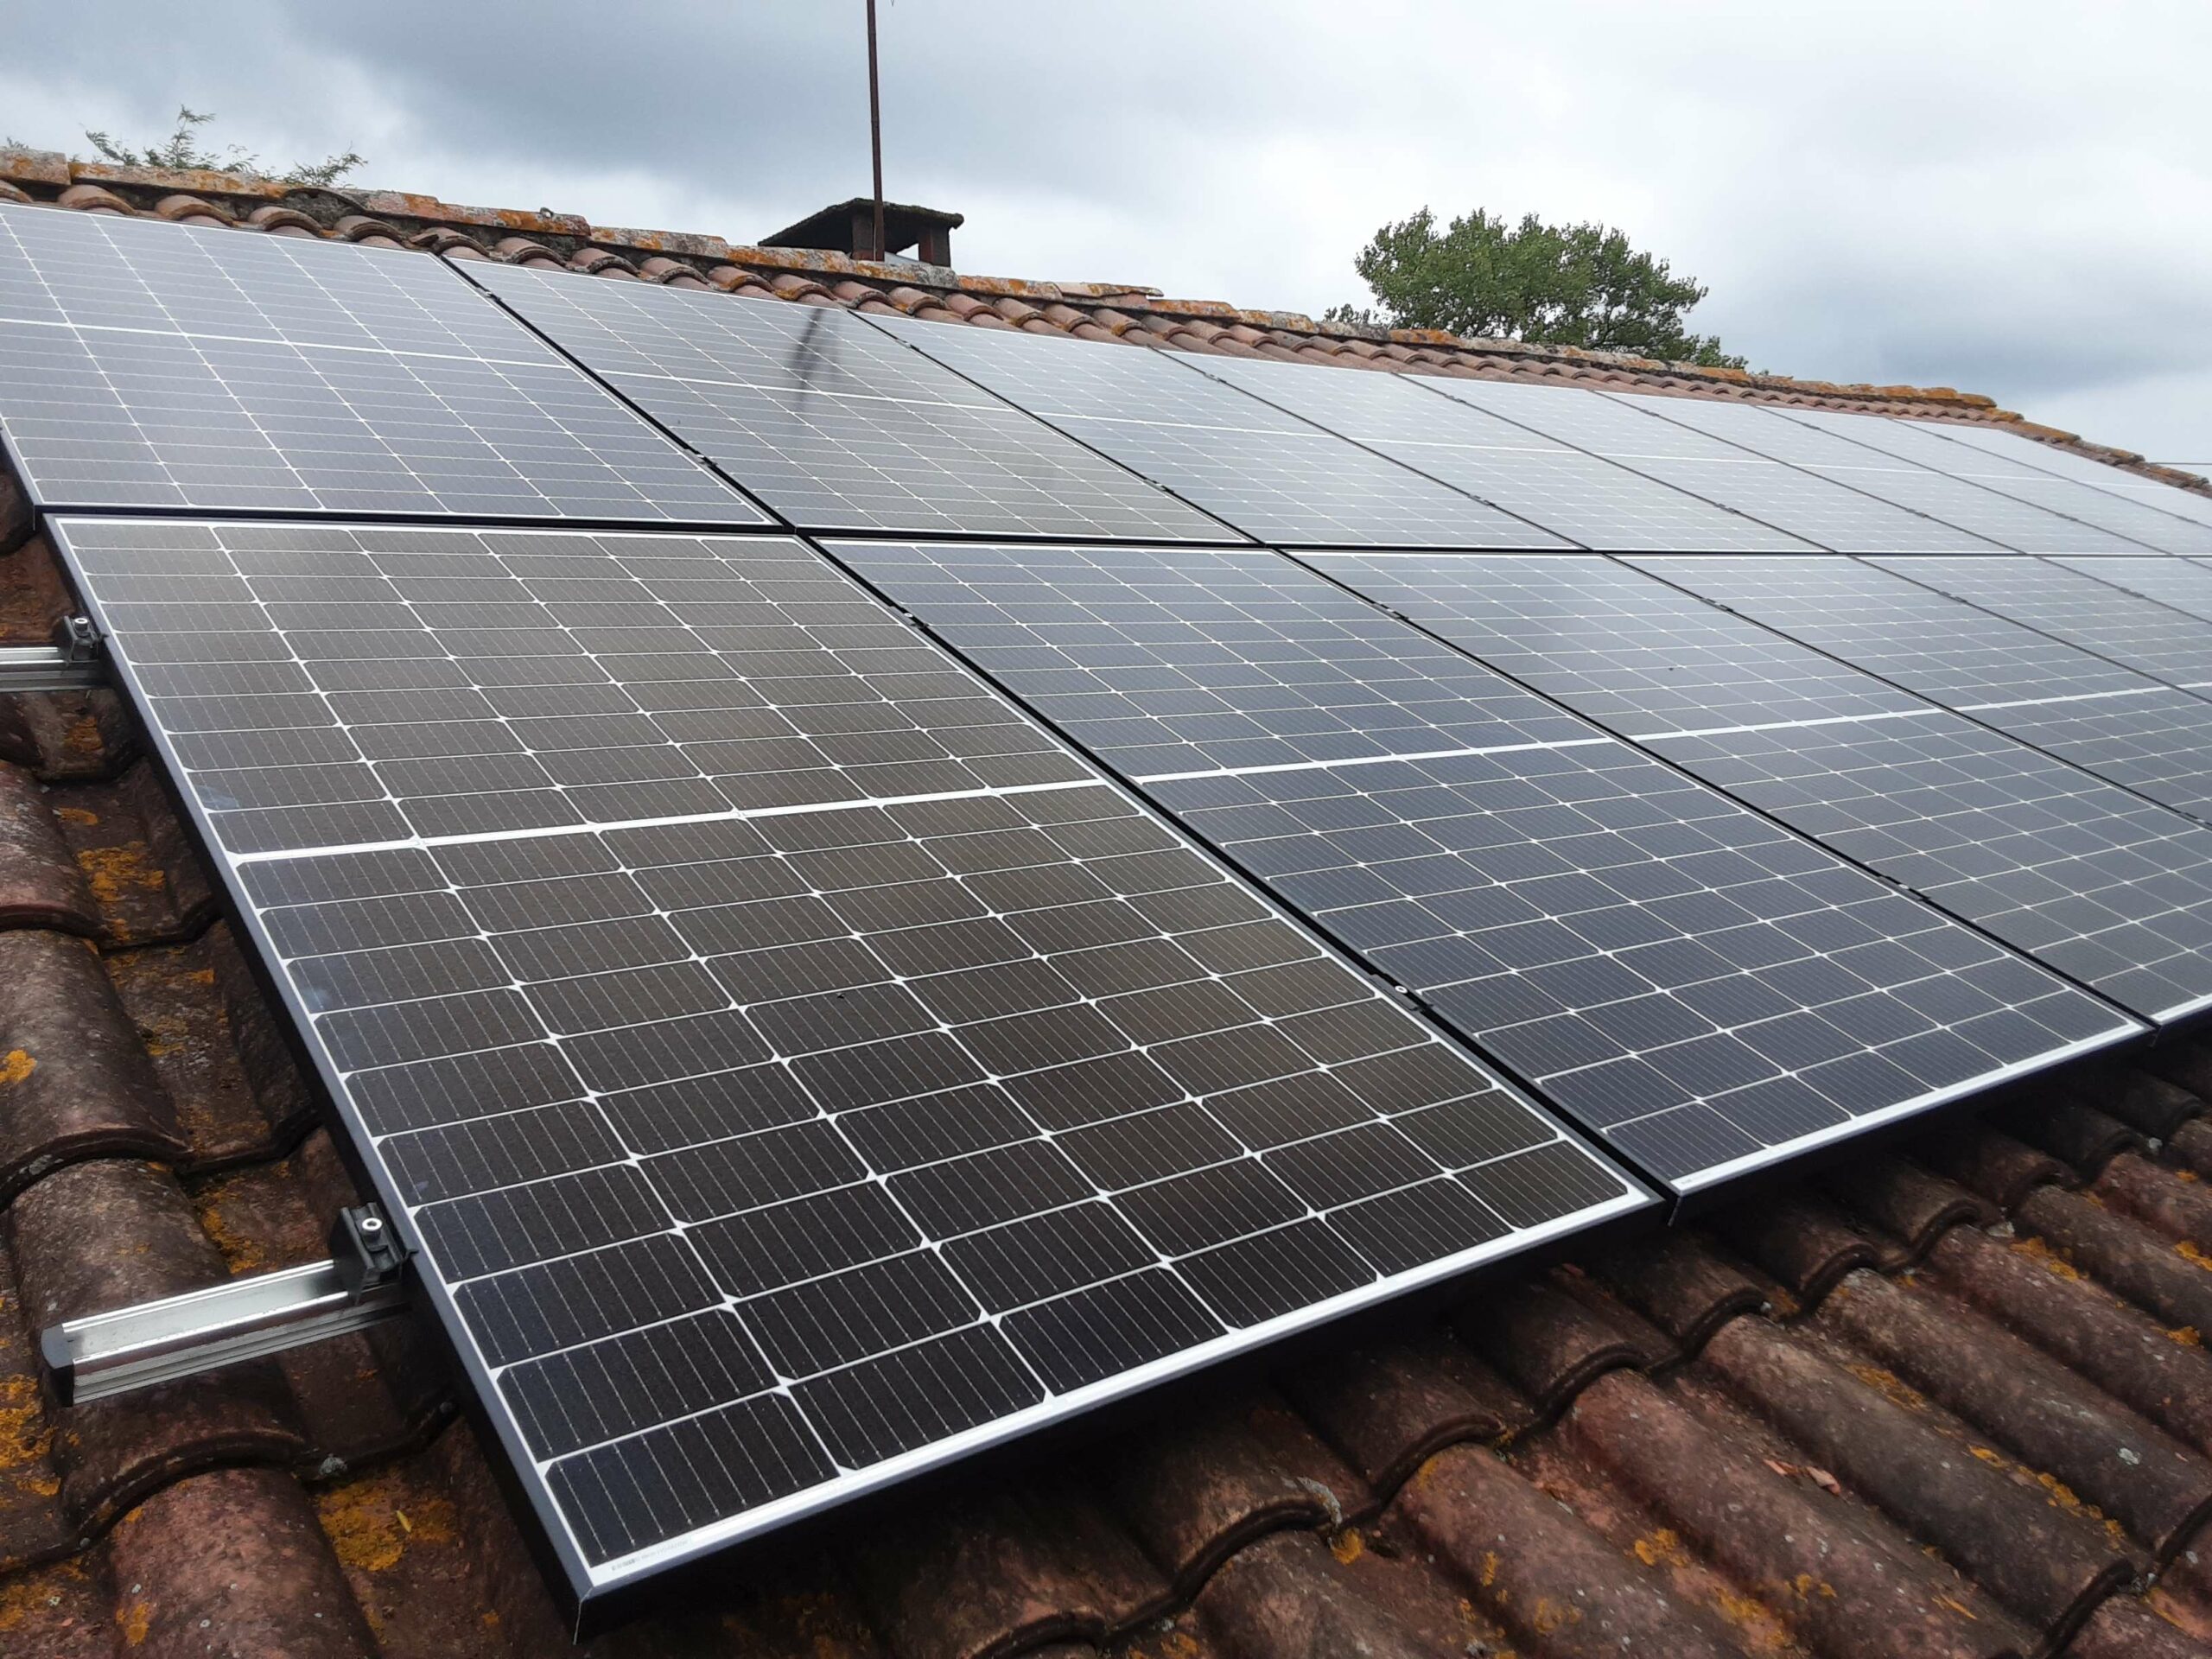 Installation photovoltaïque autoconsommation, pose panneaux solaires Pomarez (40) - Conseil production électricité photovoltaïque, devis panneaux solaires gratuit - Thermonéo, installateur panneaux solaires RGE Landes, Pays Basque